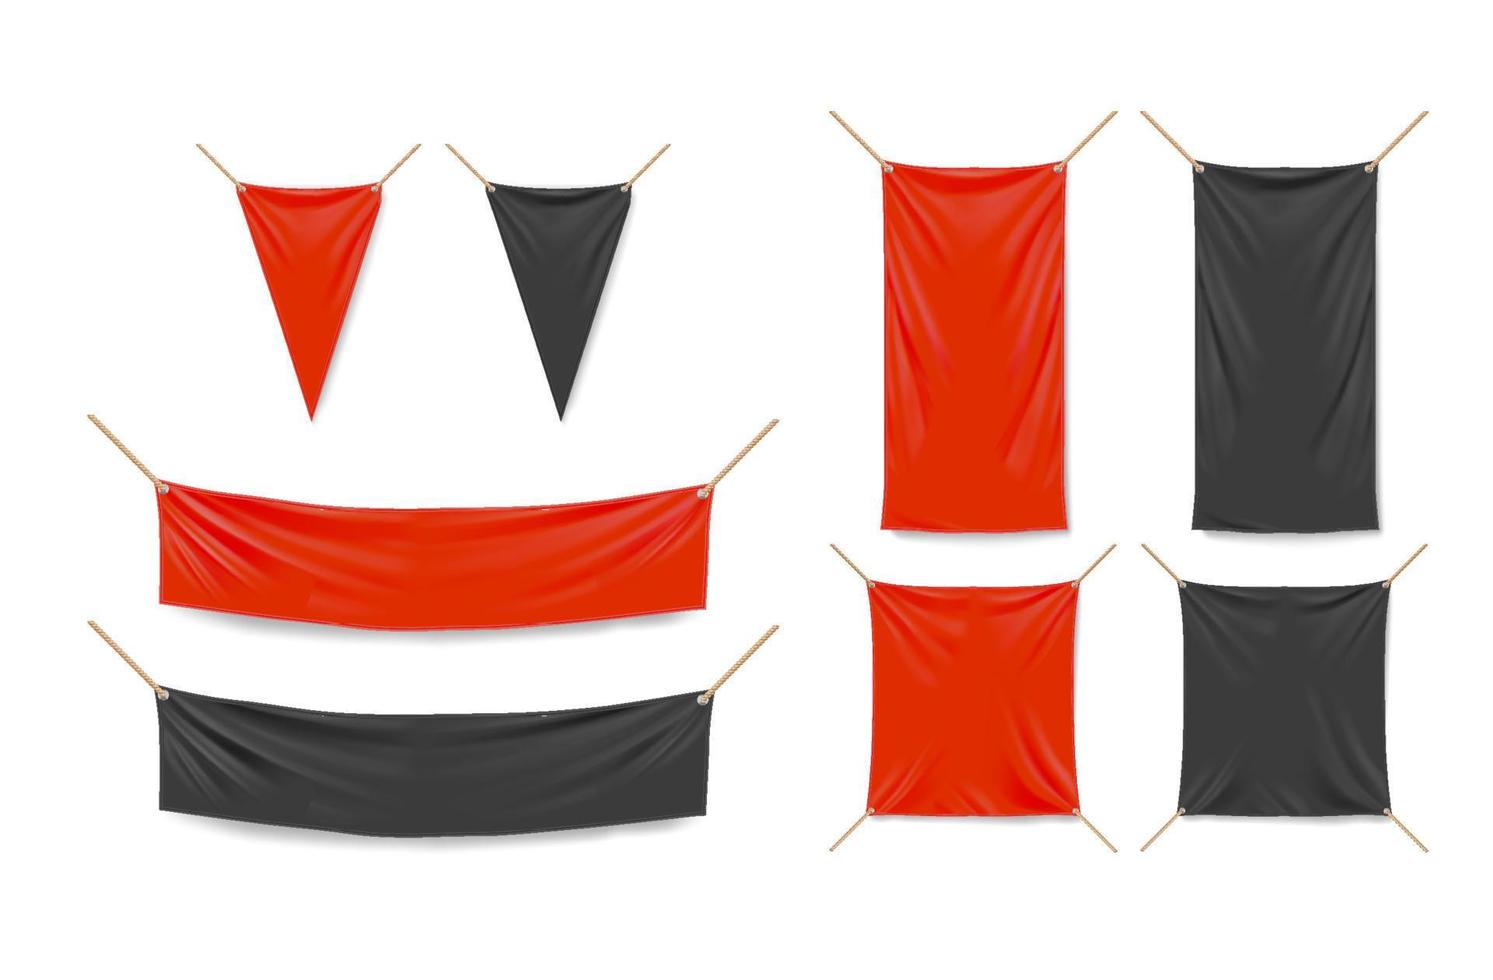 rood en zwart banners en driehoek wimpels vector